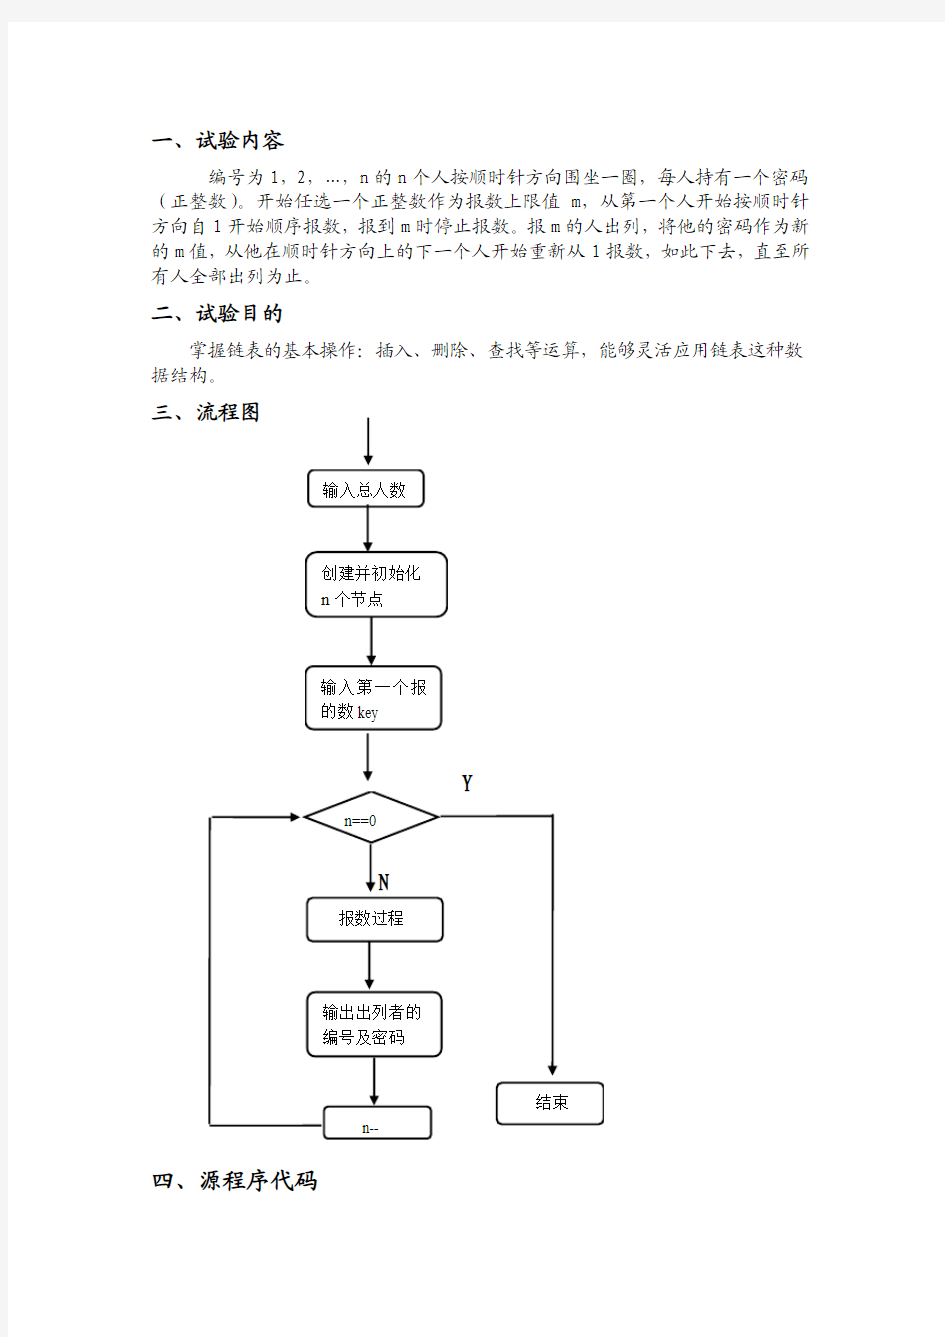 河北工业大学数据结构(定稿)